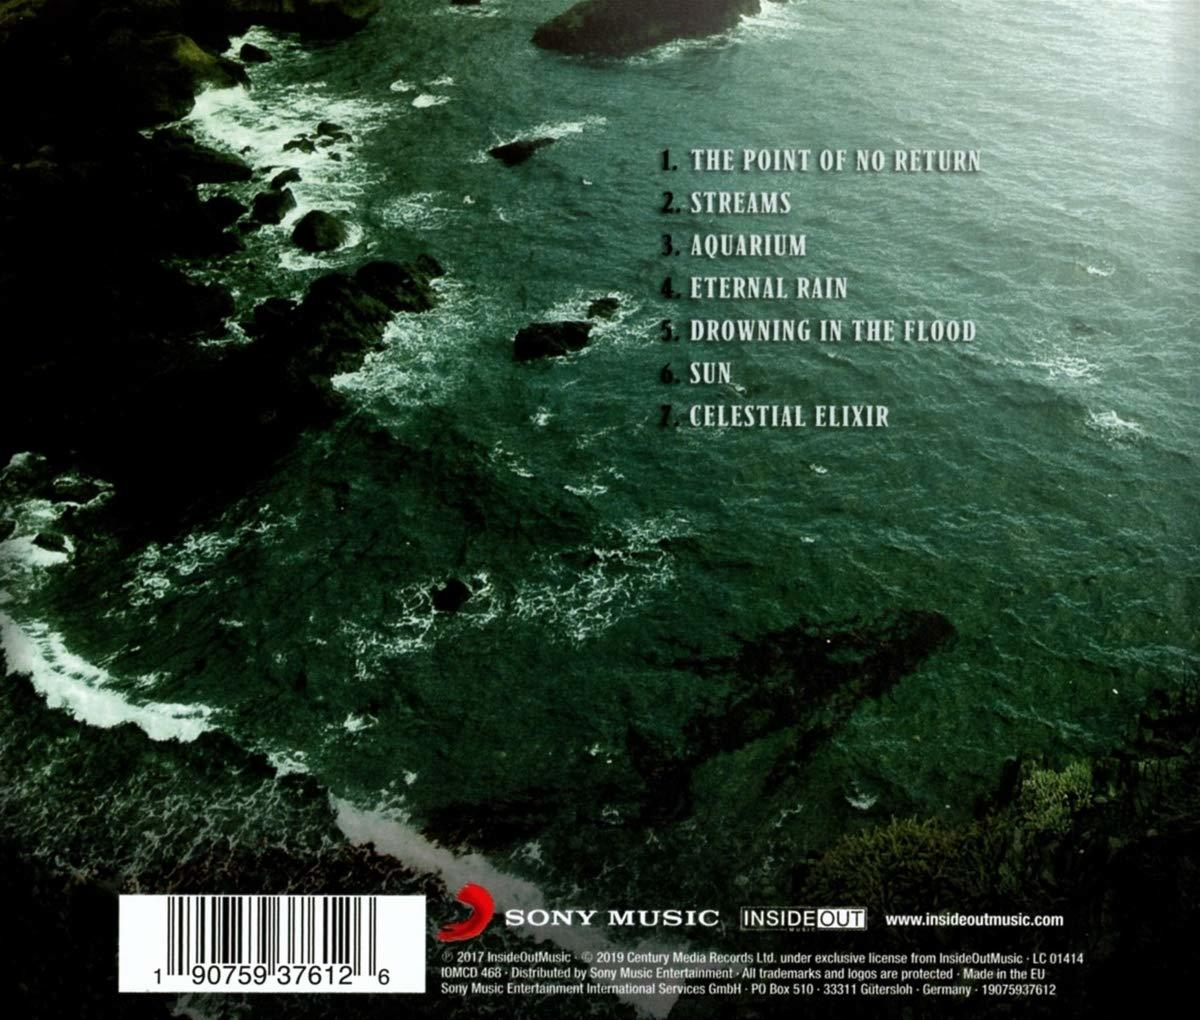 Aquarius Haken (Re-issue - - 2017) (CD)